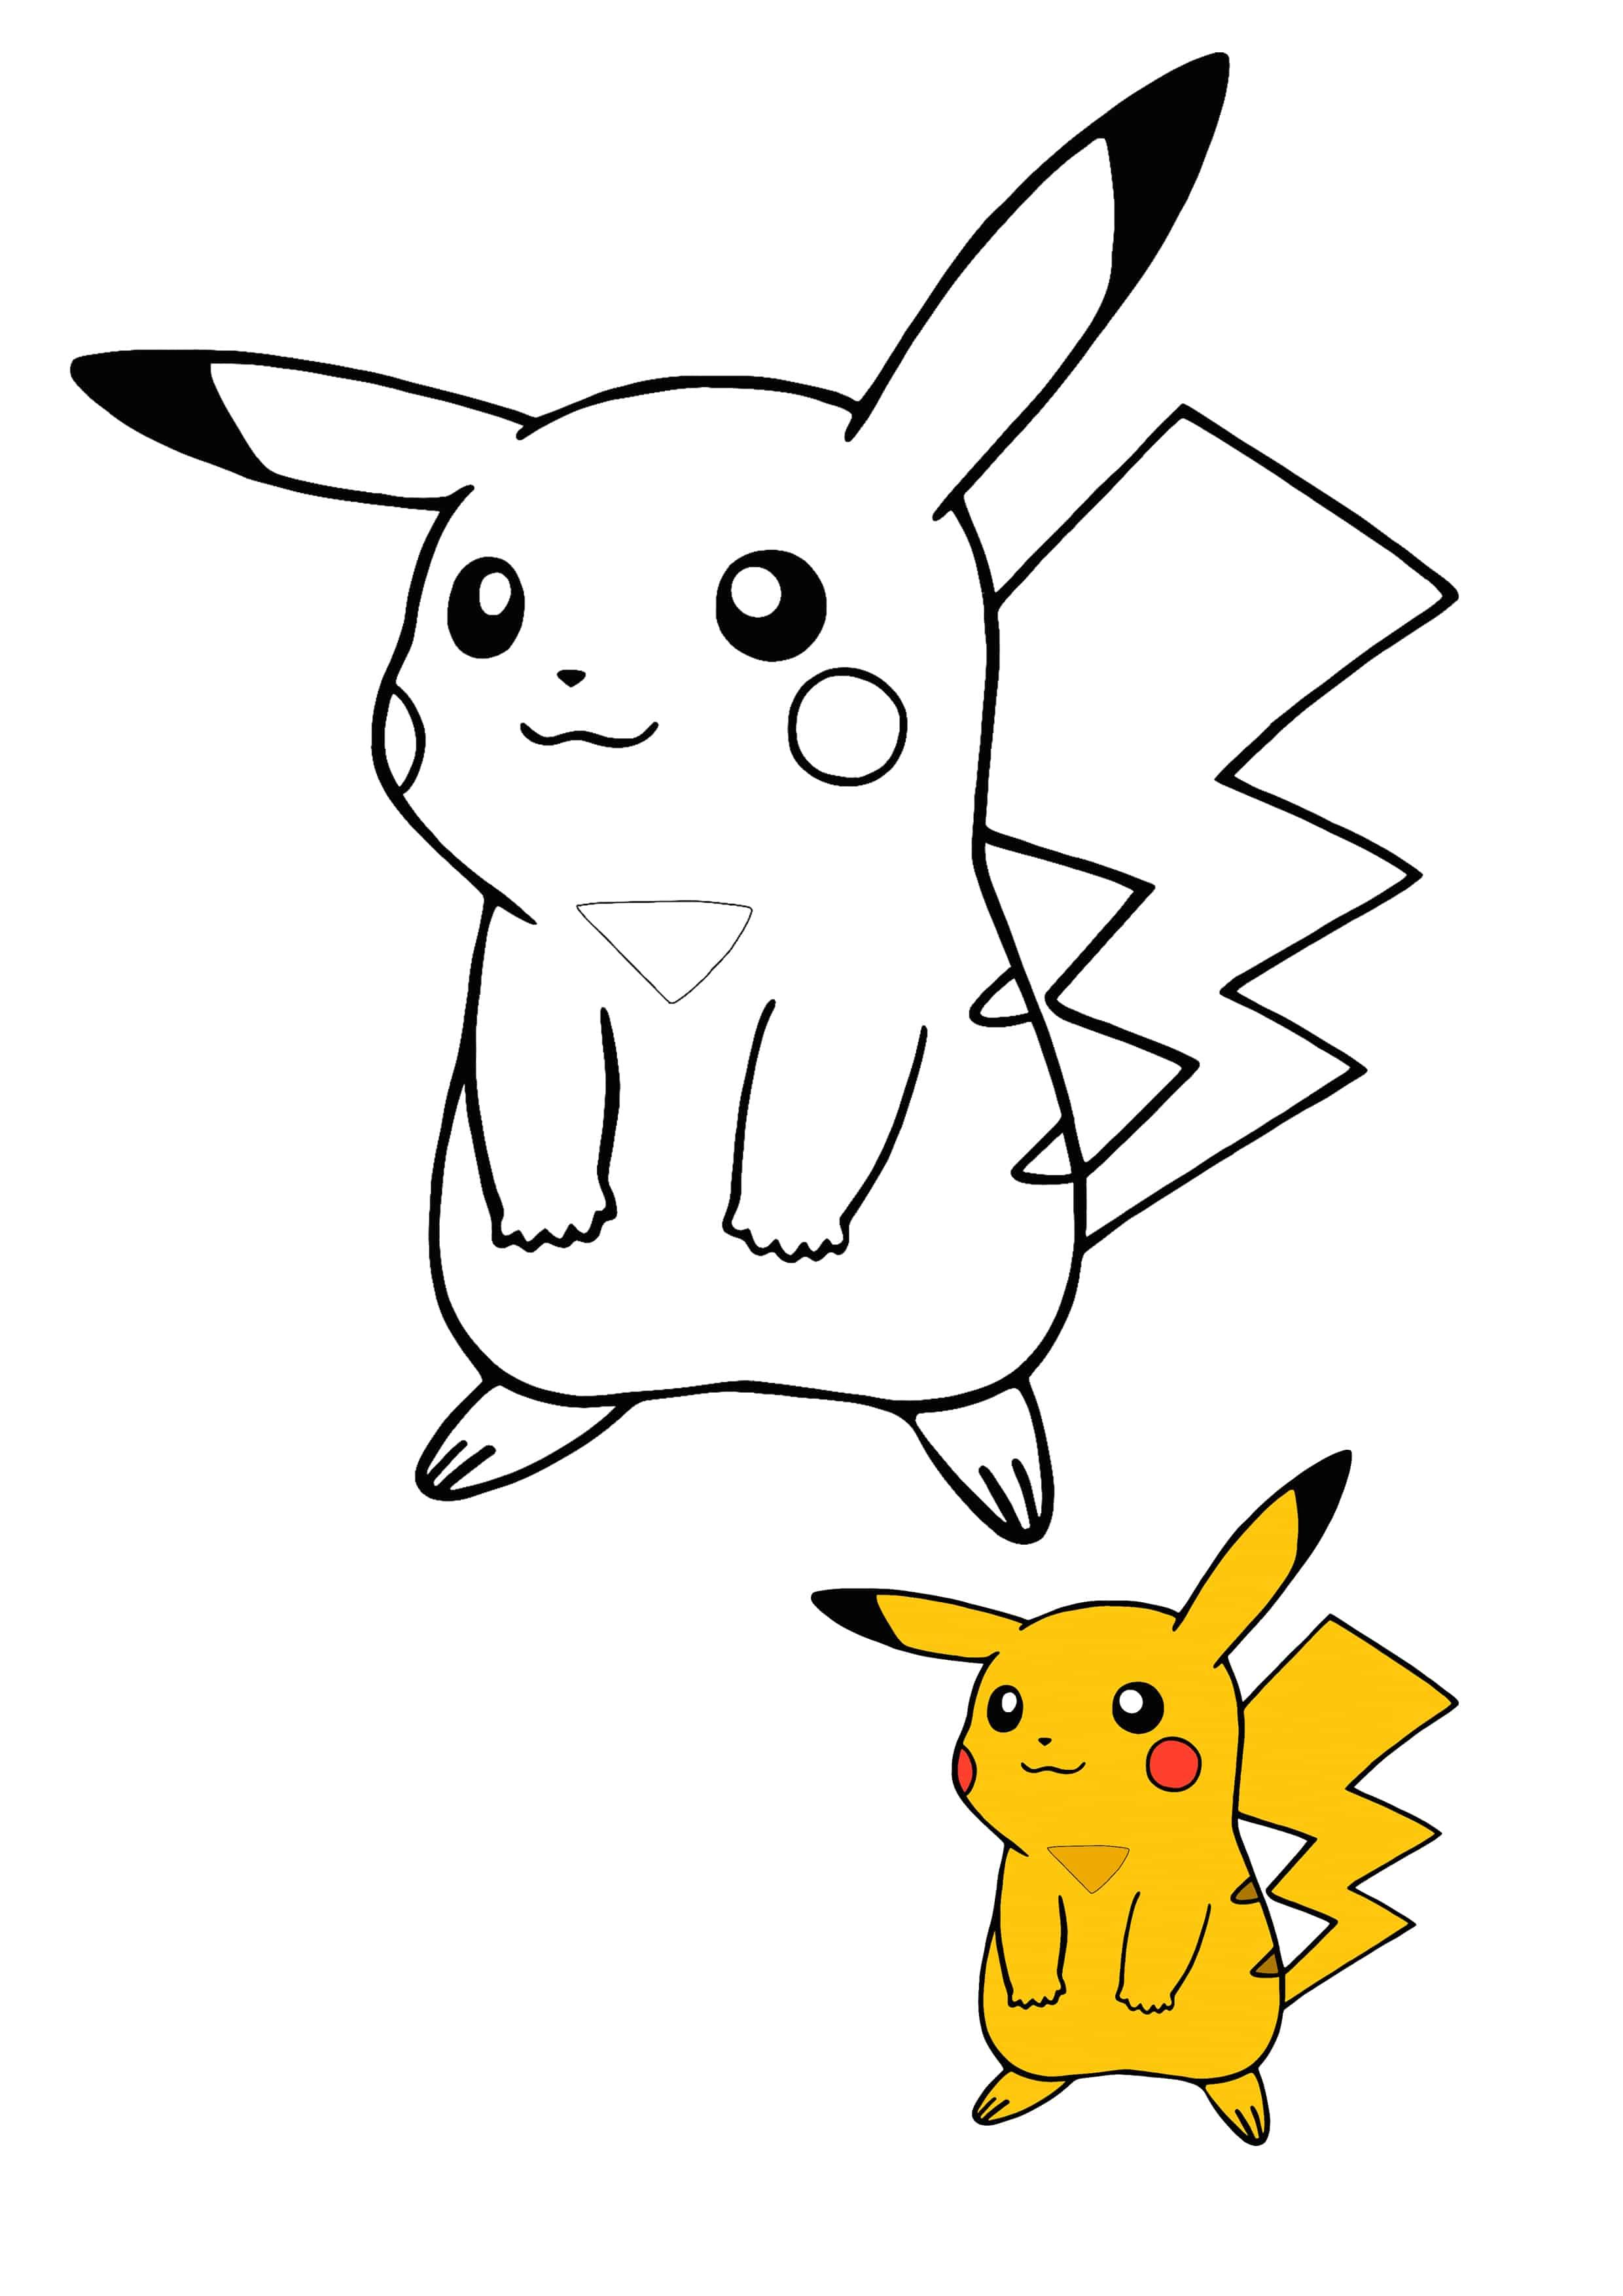 Xem hơn 100 ảnh về hình vẽ pikachu dễ thương  daotaonec